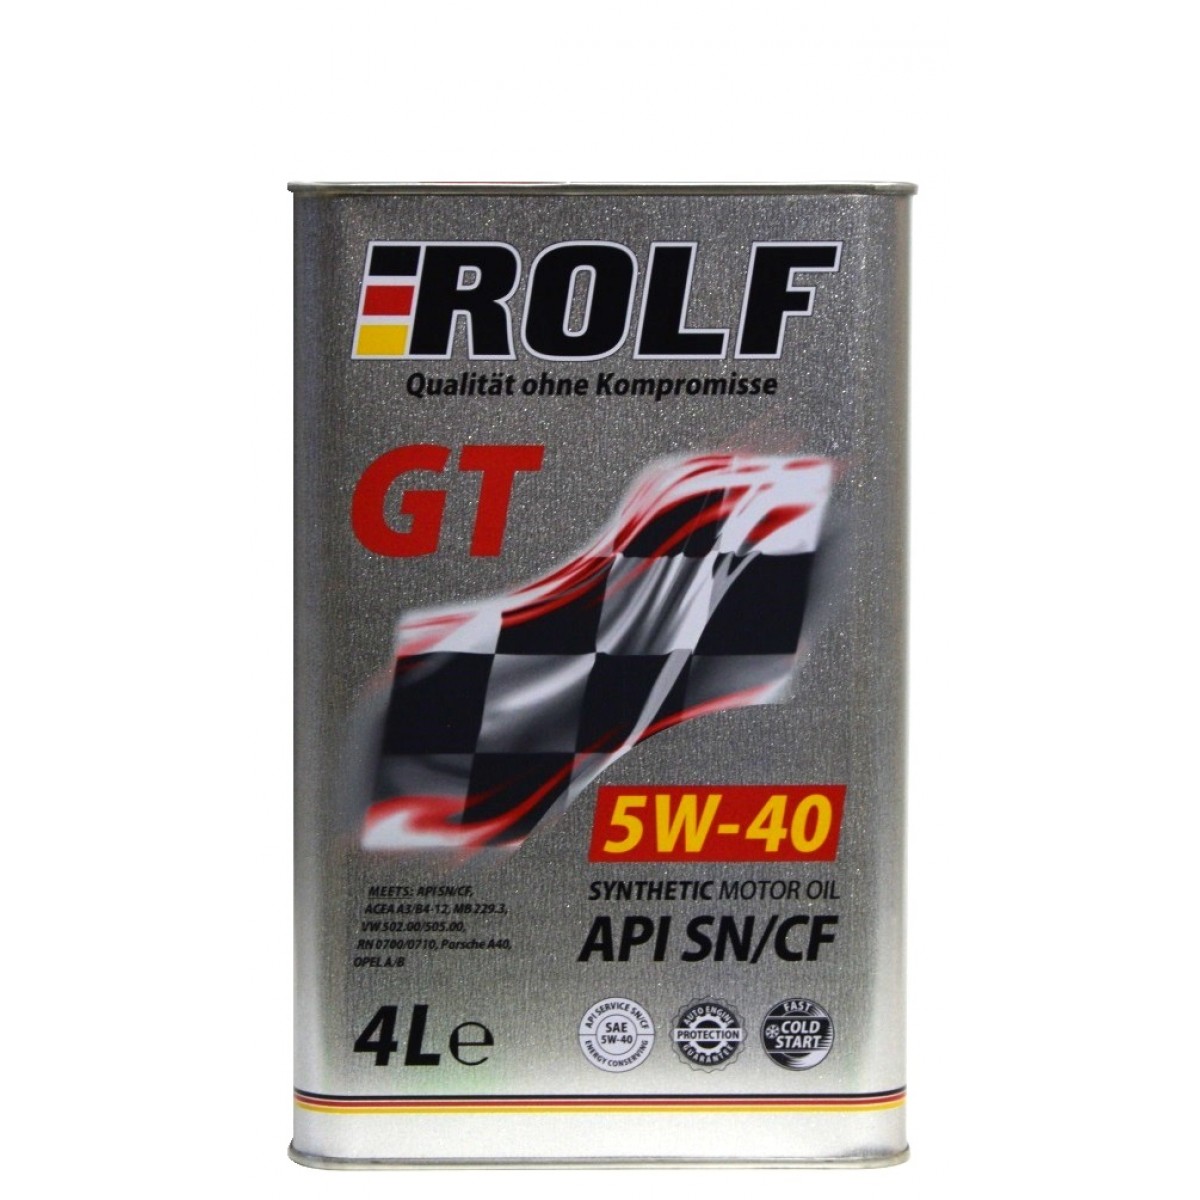 Масла в омске 5w40 купить. Rolf gt SAE 5w-40 API SN/CF Sint 4л. Rolf 5w40 gt 4л артикул. Rolf 5w40 fully Synthetic. Моторное масло Rolf gt SAE 5w-40 4л синтетическое.